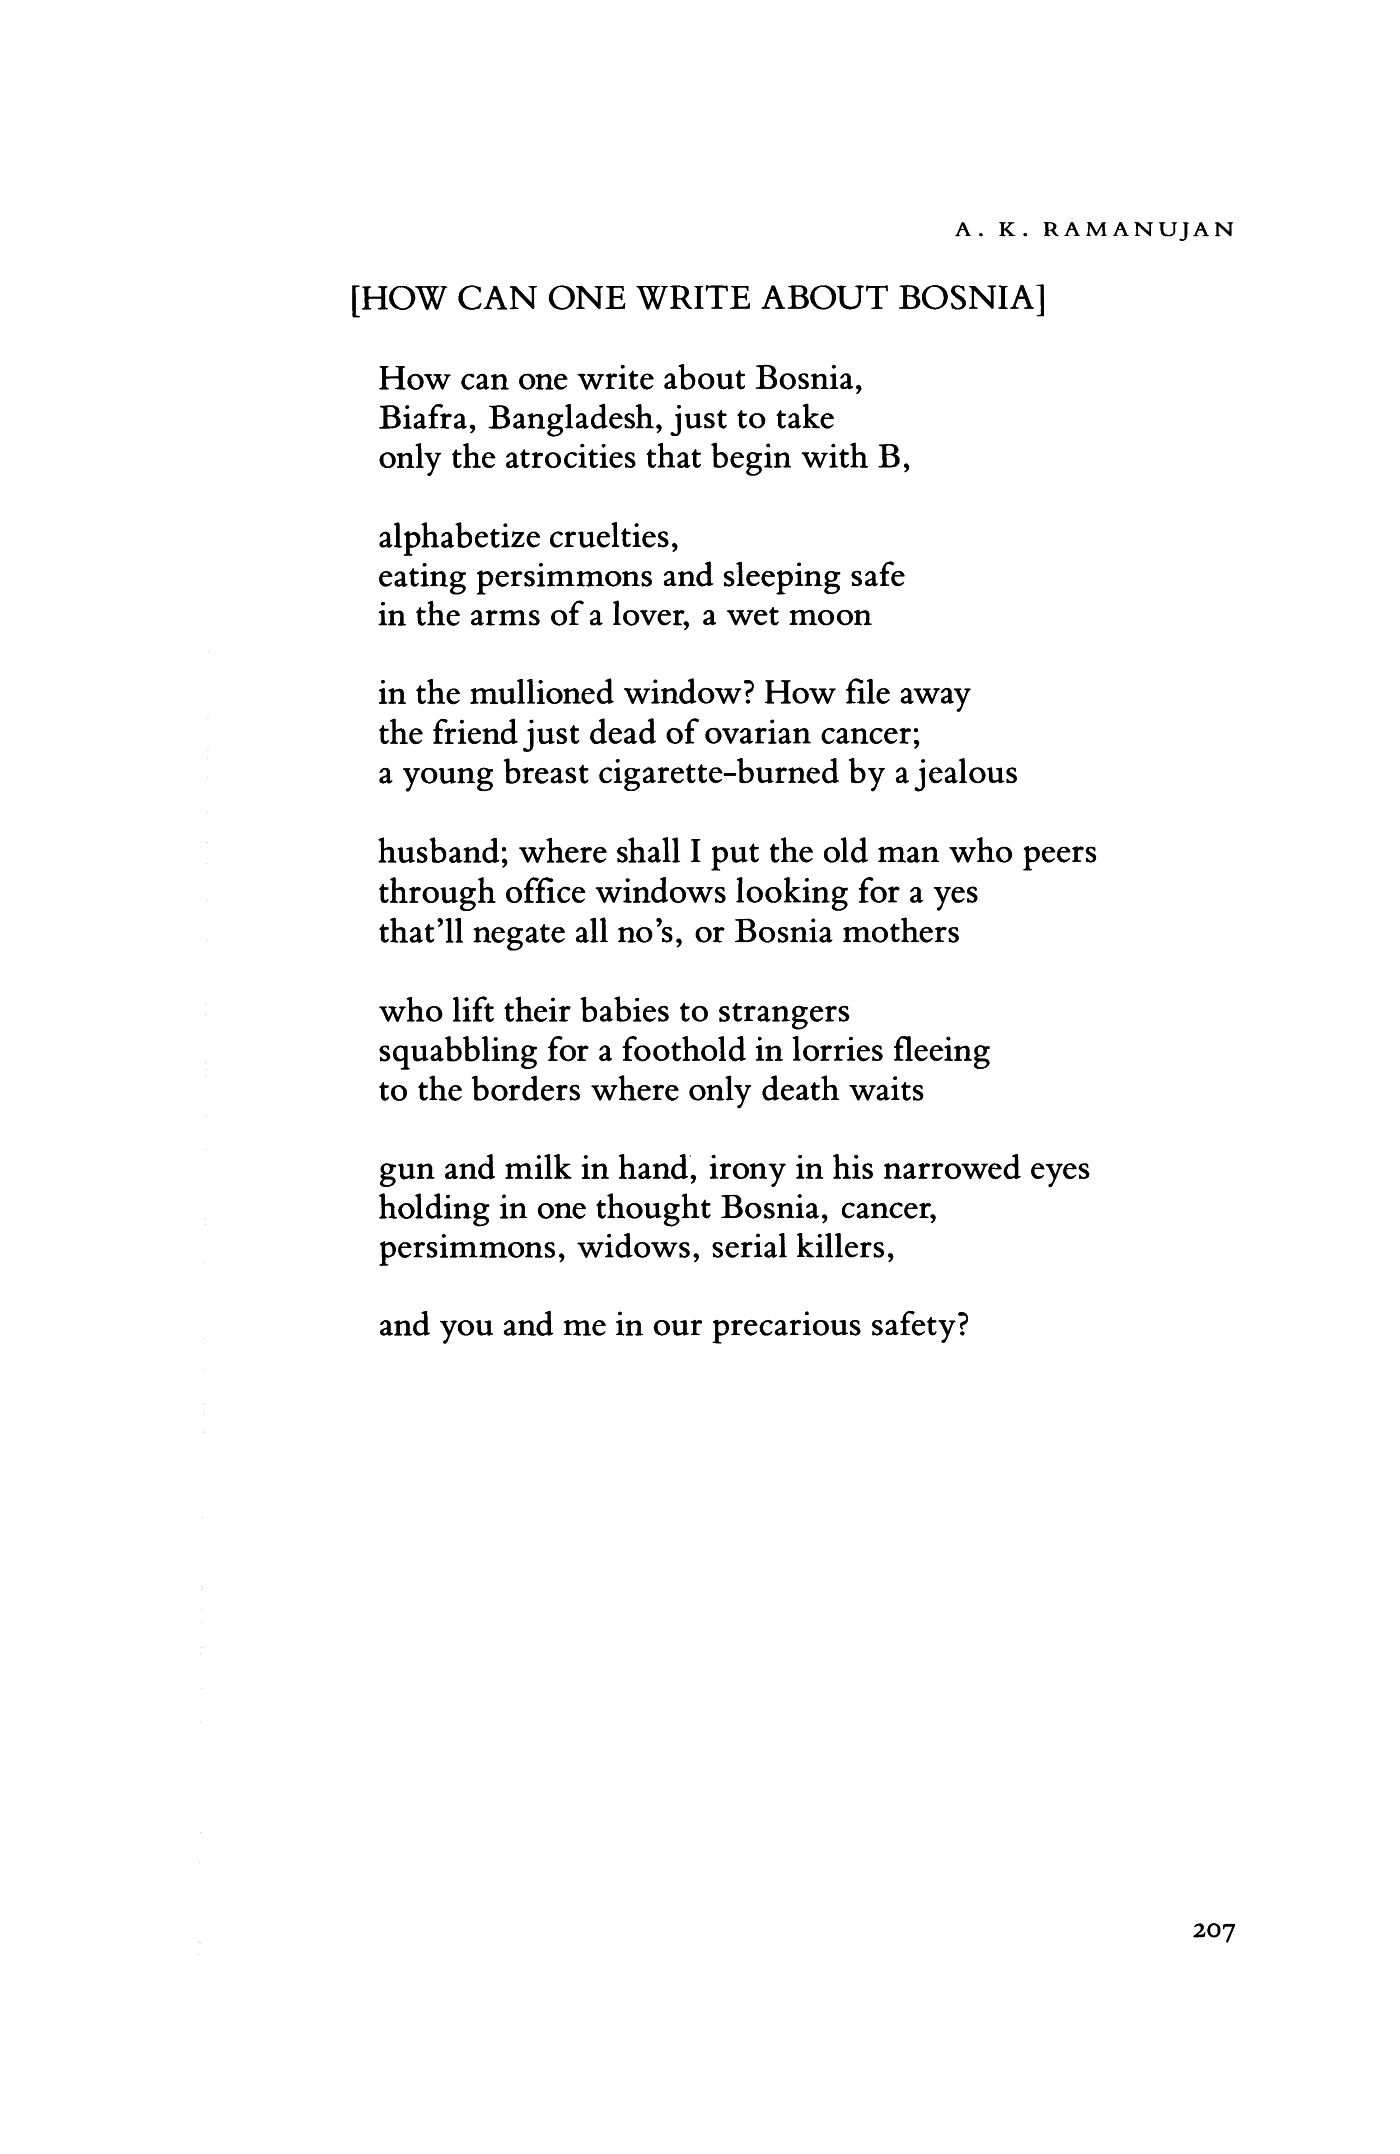 ak ramanujan poems